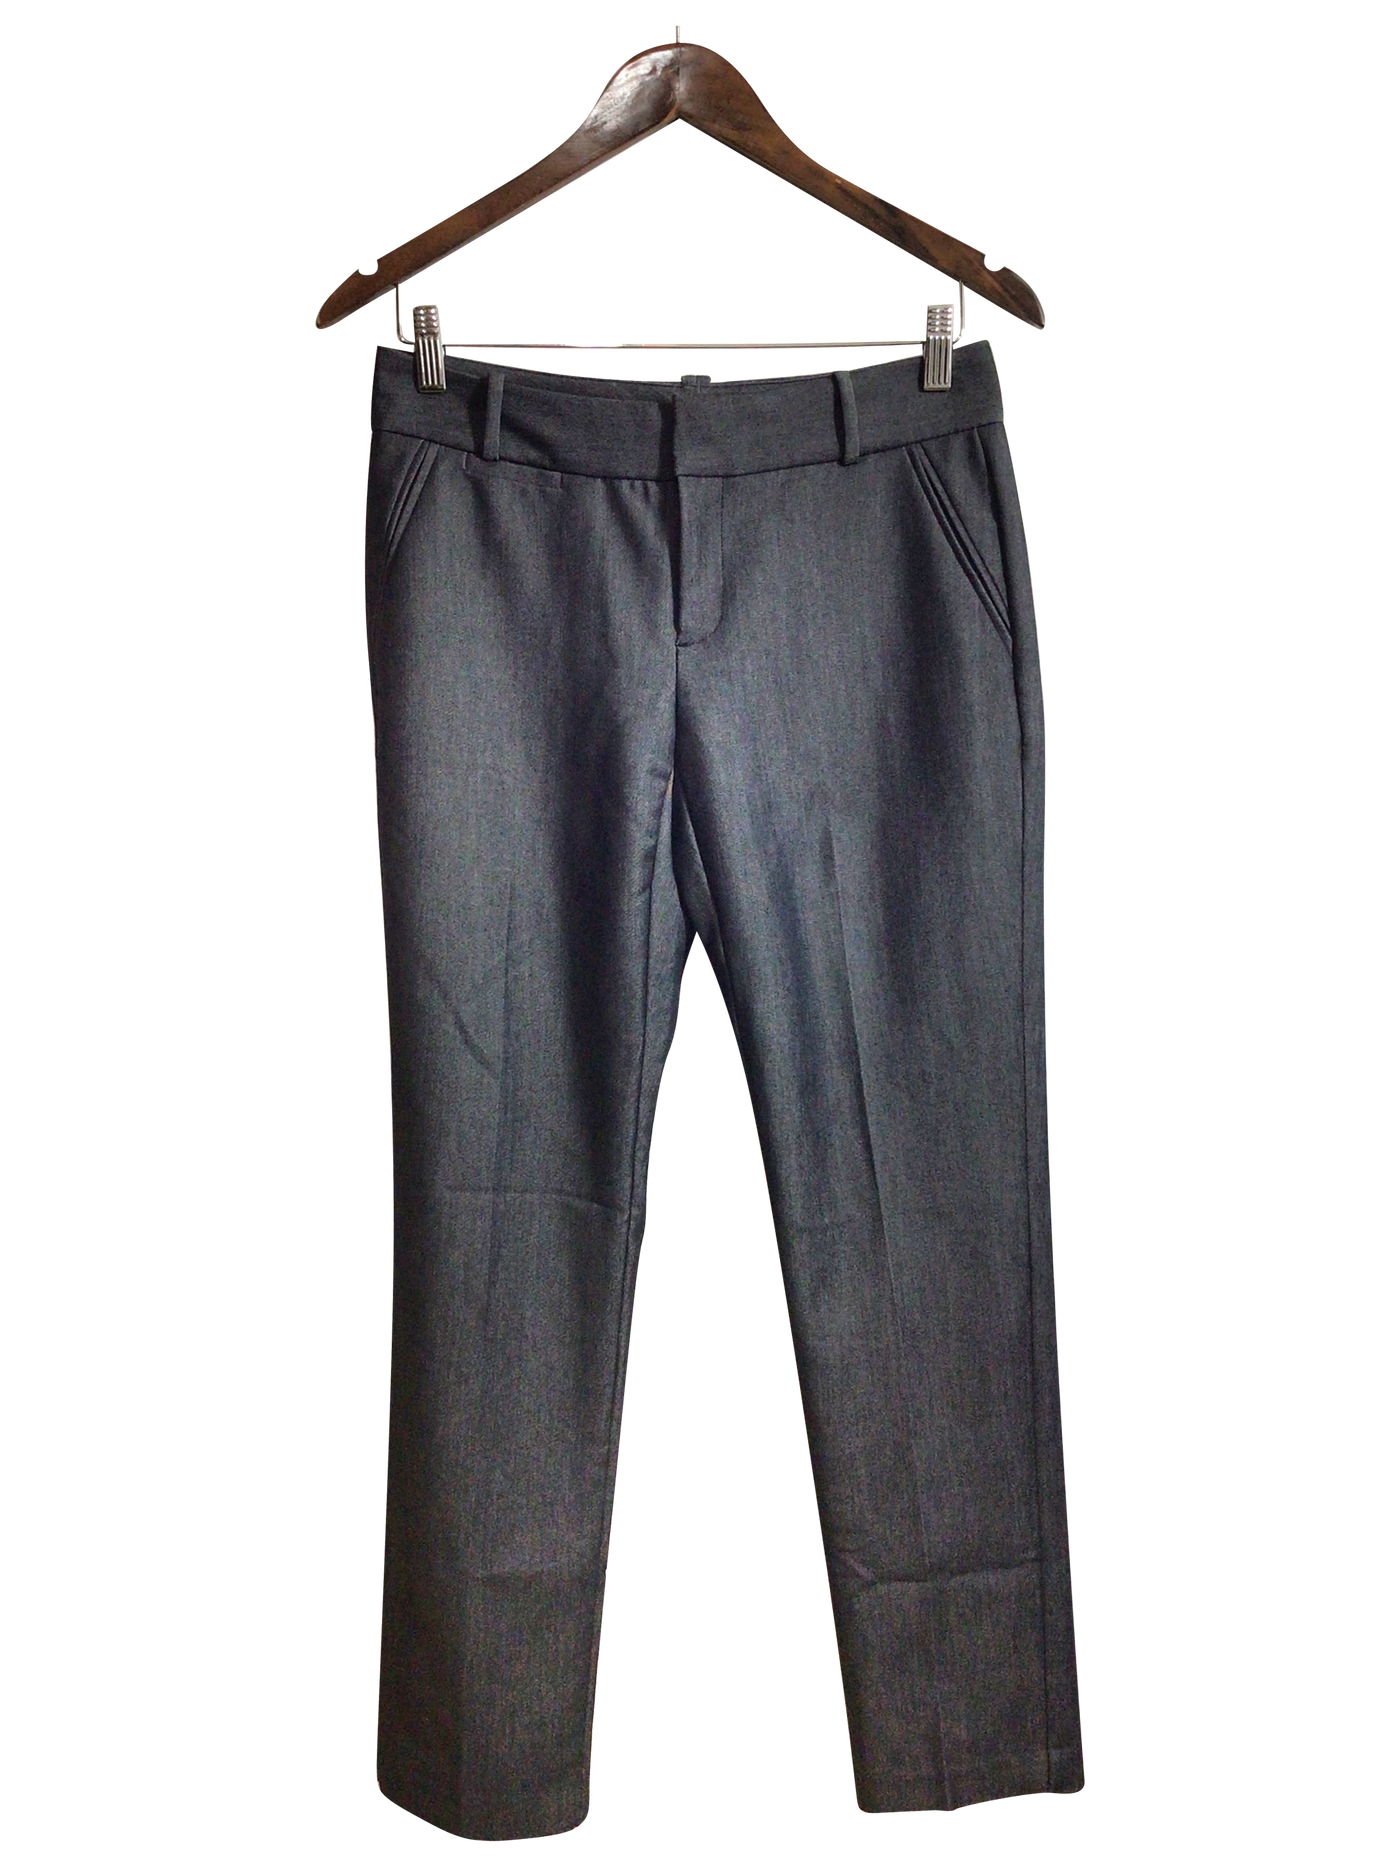 CALVIN KLEIN Women Work Pants Regular fit in Gray - Size 2 | 7.79 $ KOOP